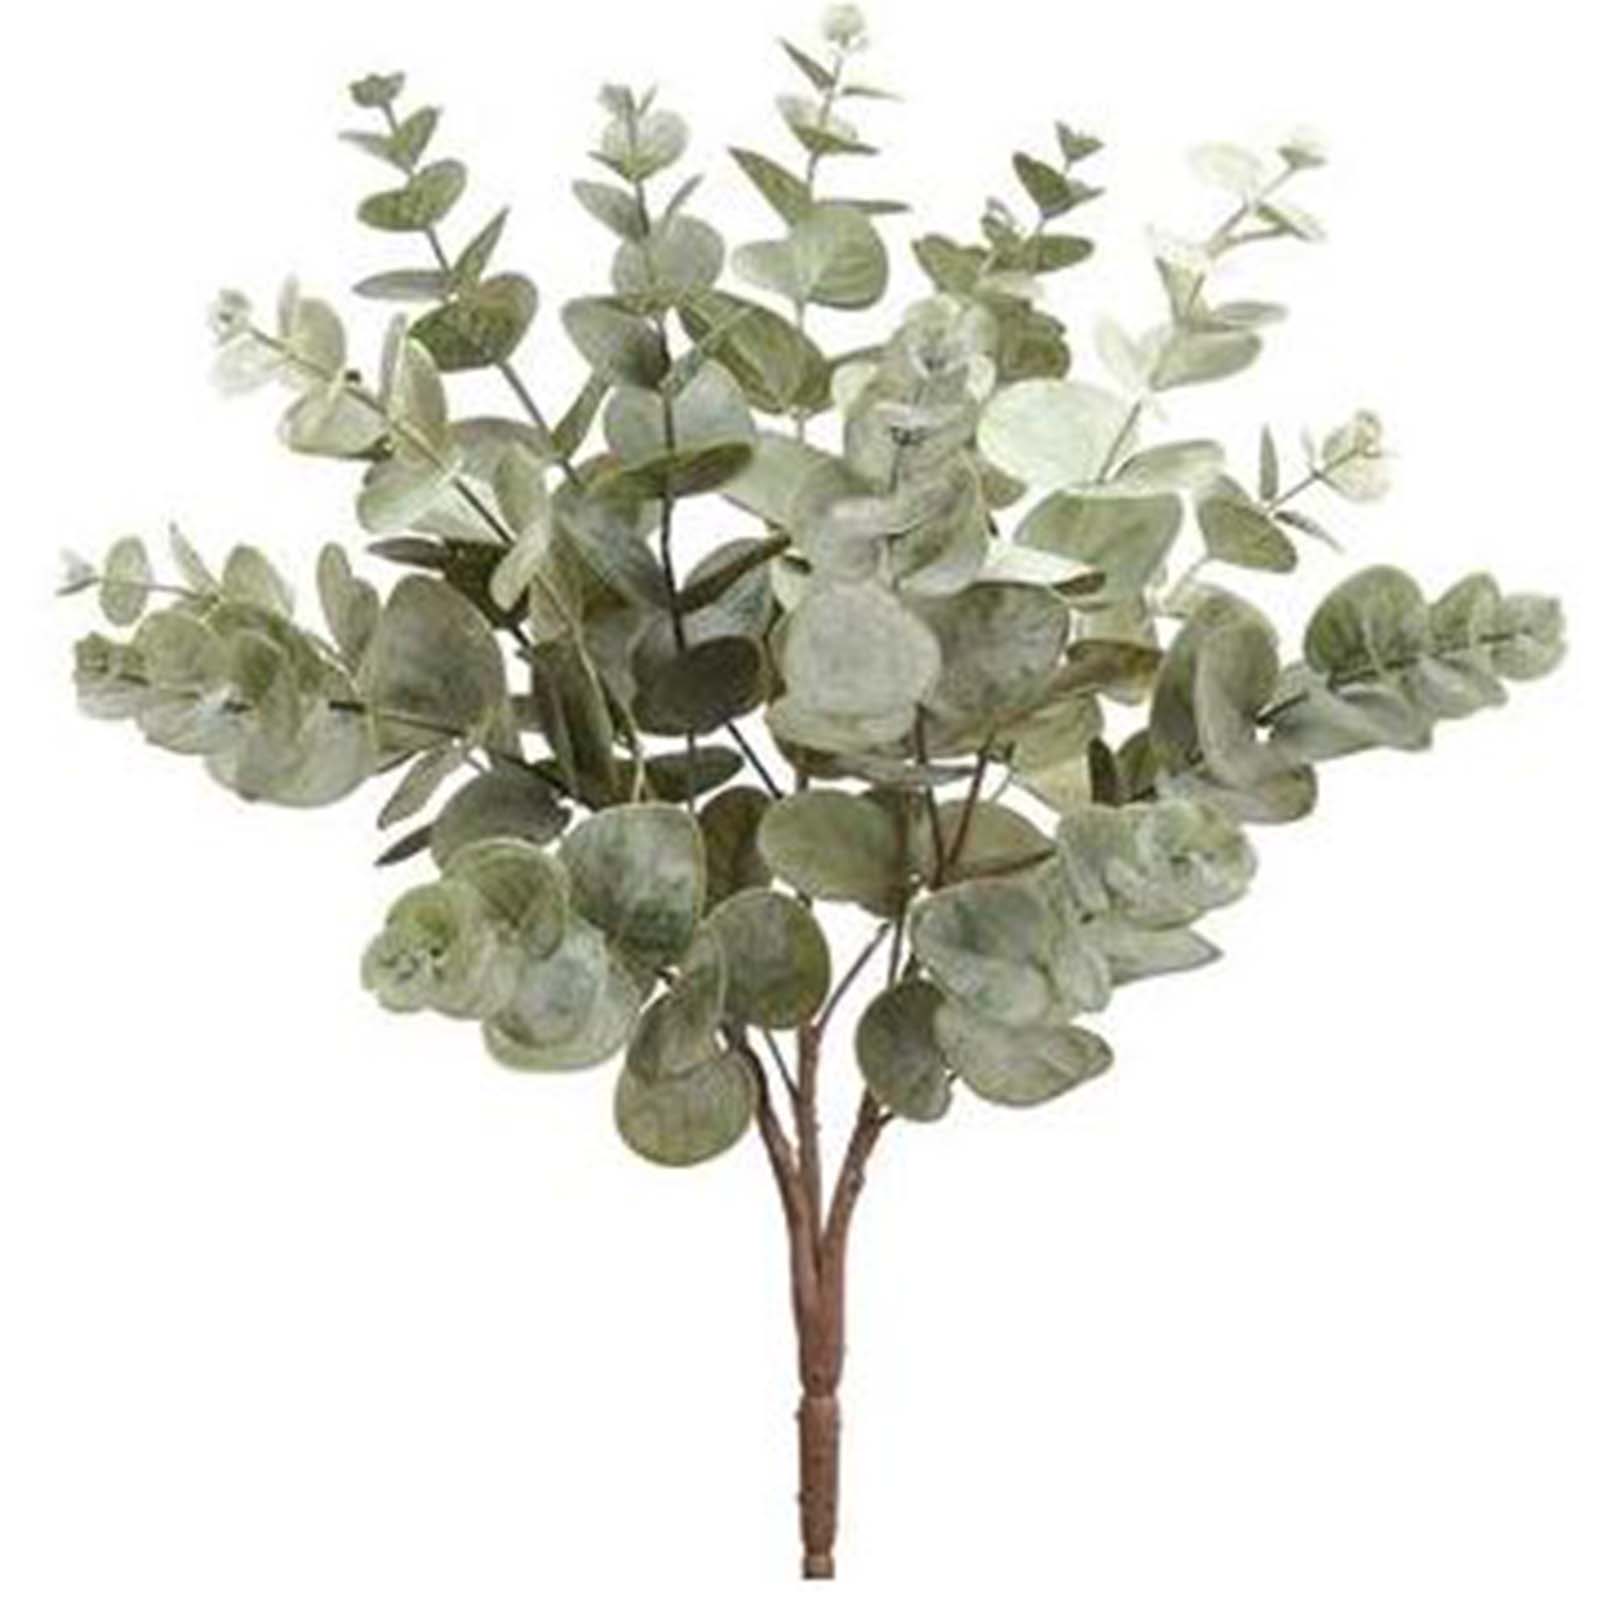 19" Eucalyptus Bush - Green/Gray